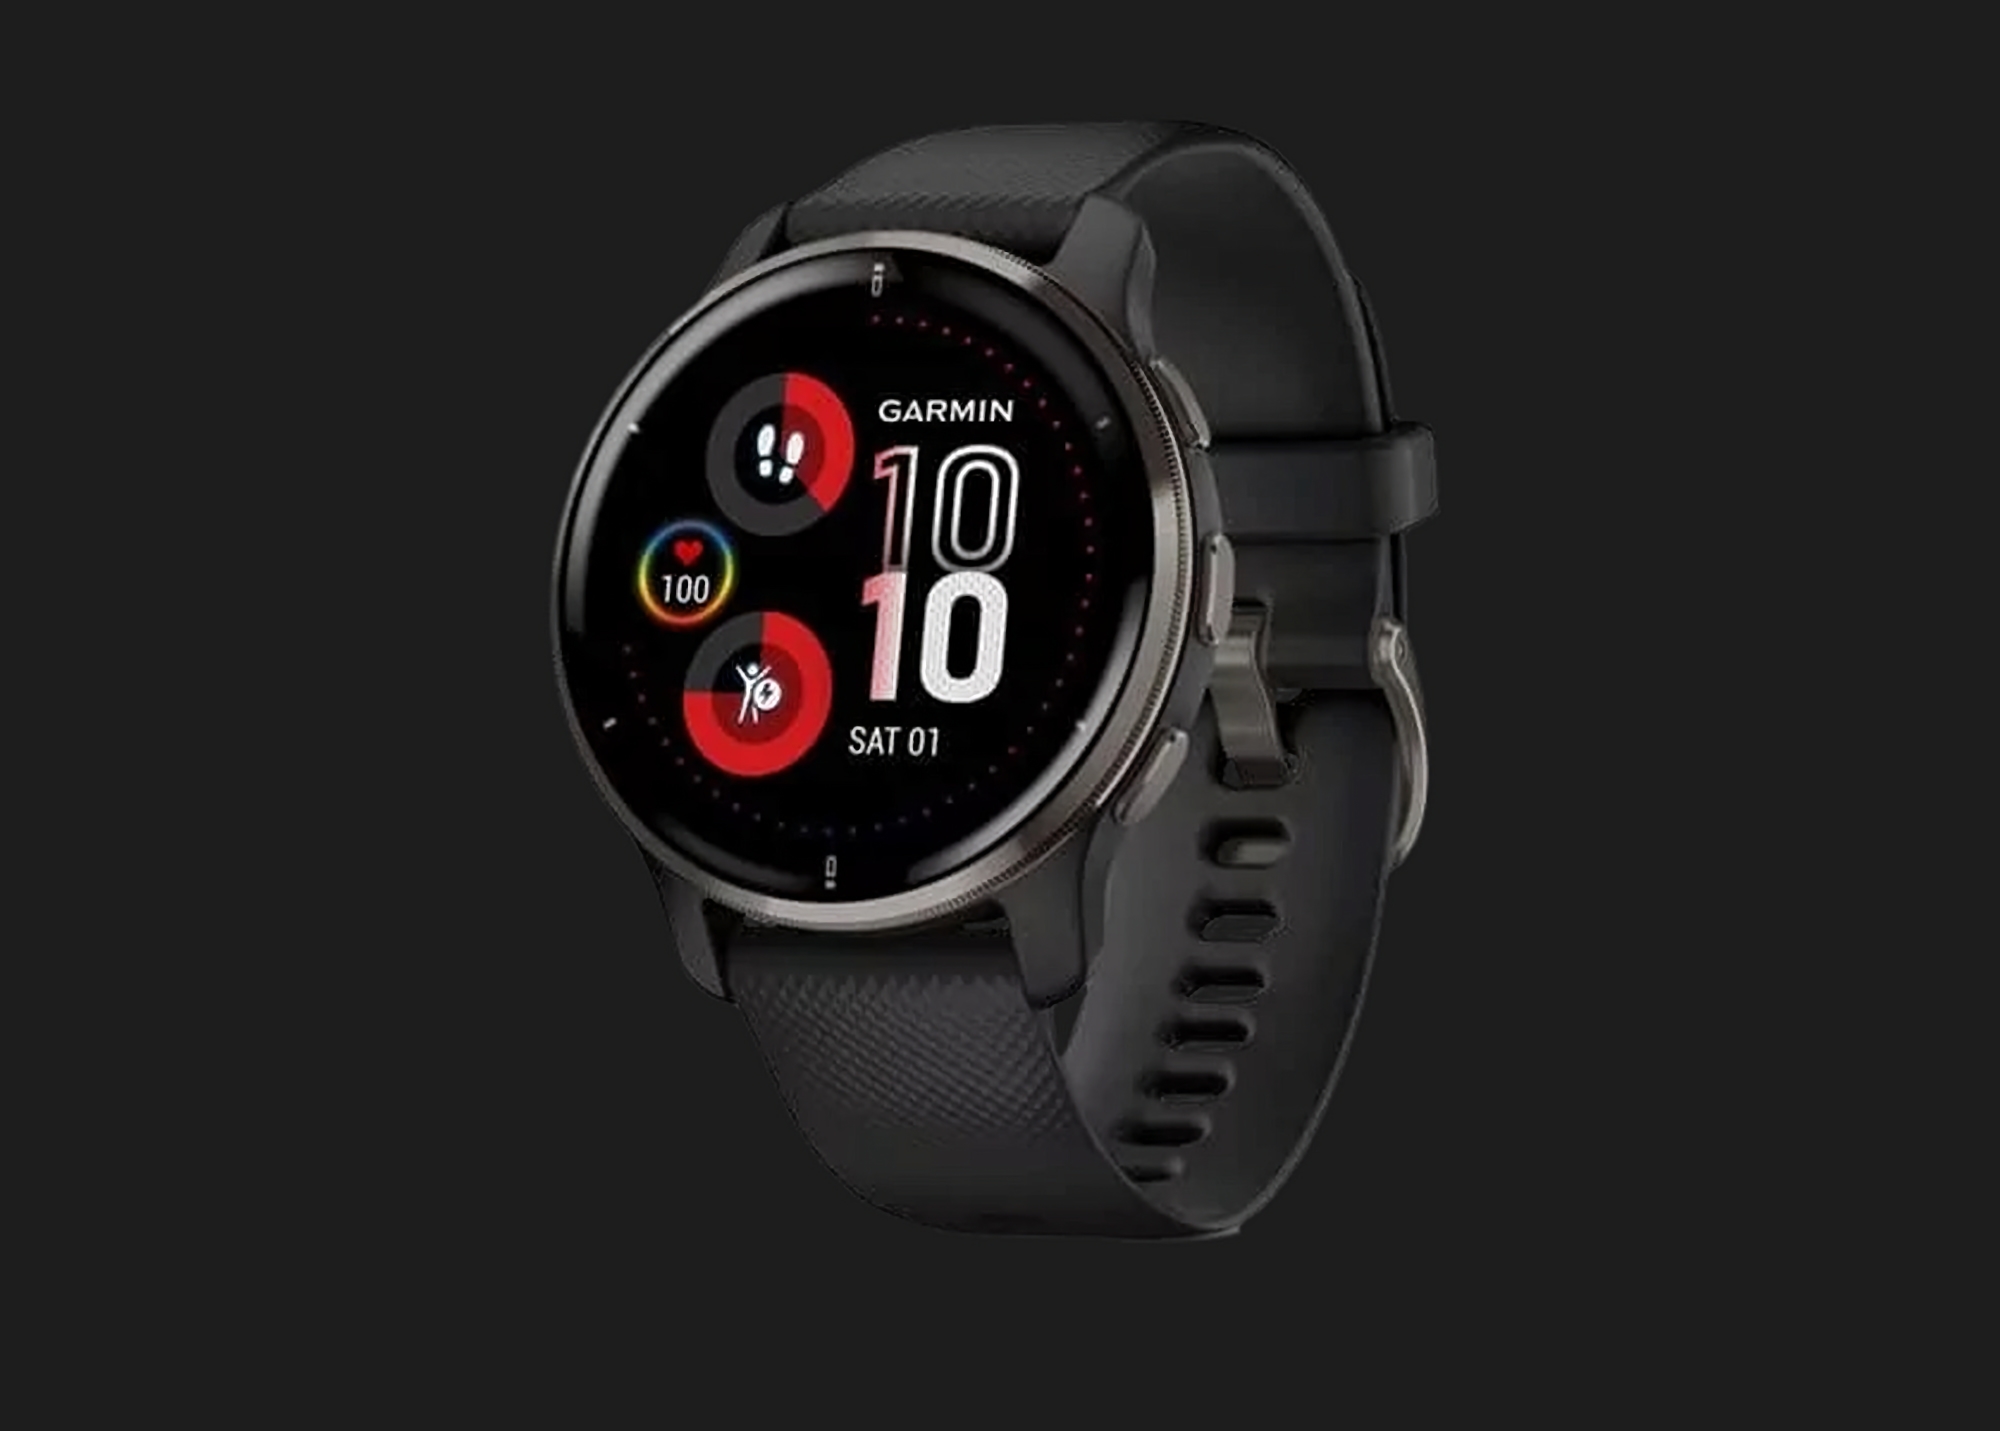 L'affaire du jour : Garmin Venu 2 Plus smartwatch sportive sur Amazon avec une réduction de 120